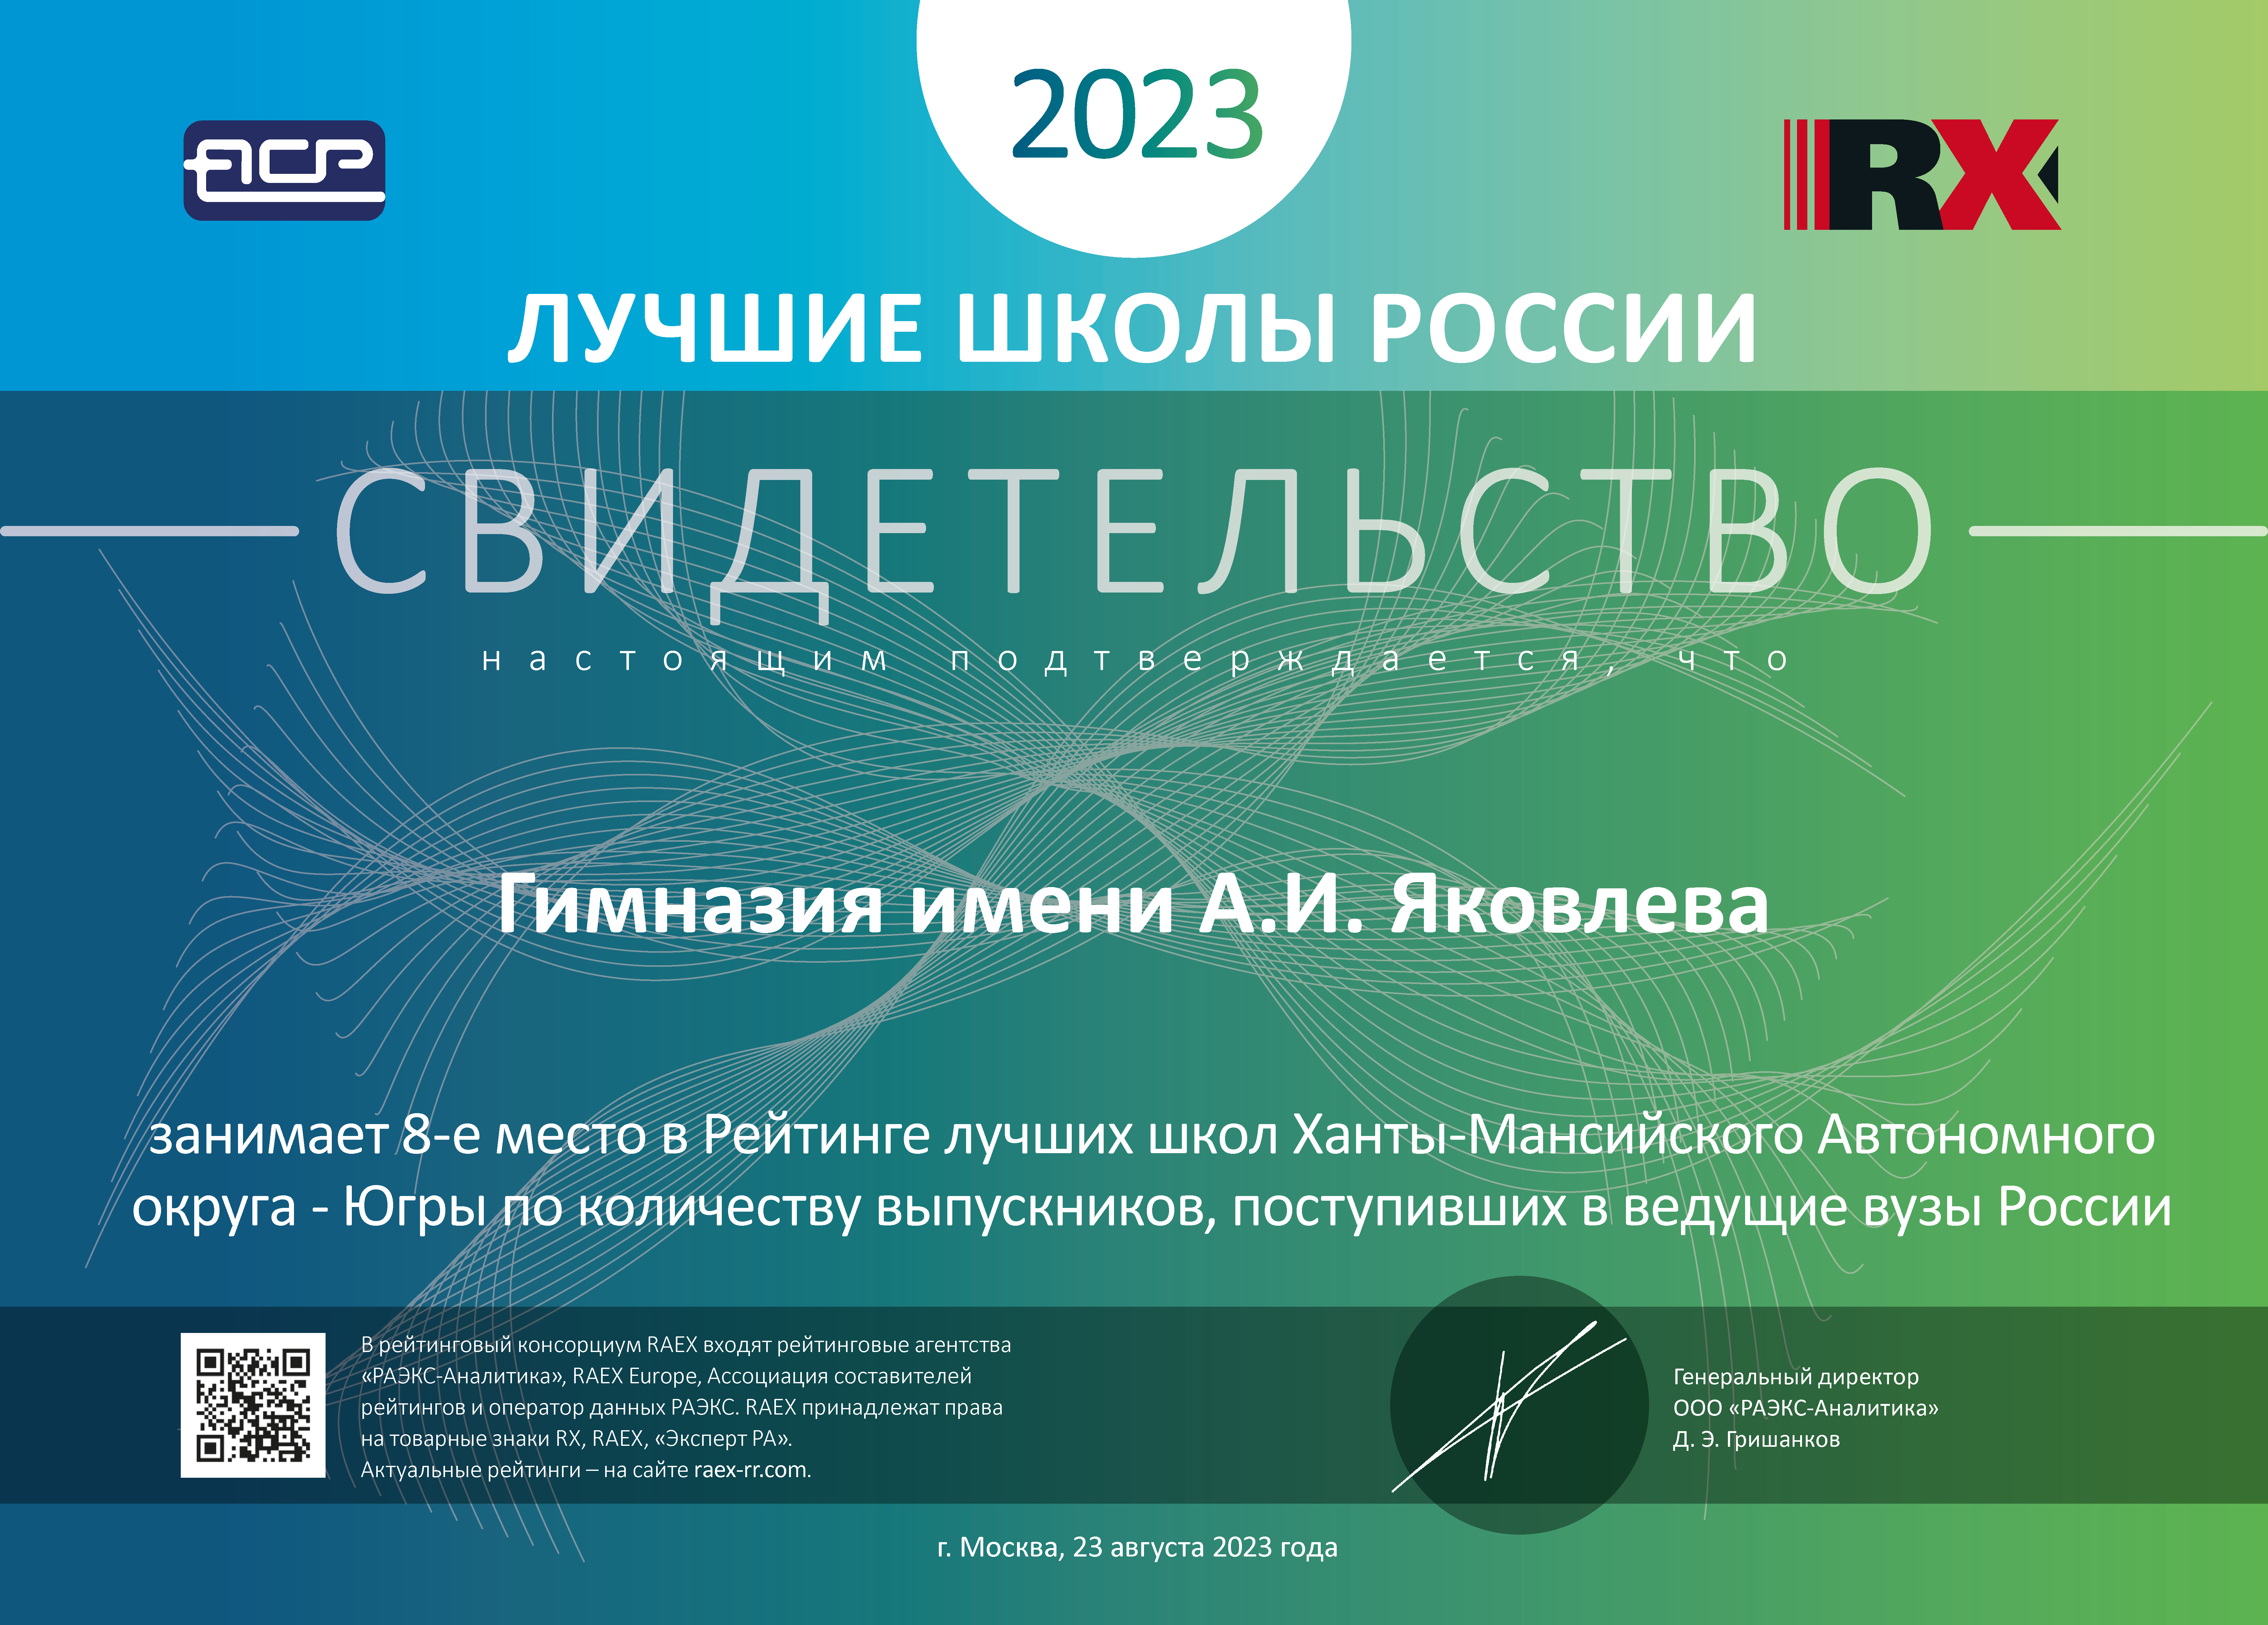 МБОУ Гимназия имени А.И. Яковлева вошла в число лучших школ России согласно исследованию, проведённому в 2023 году рейтинговым агентством RAEX («РАЭКС-Аналитика»).